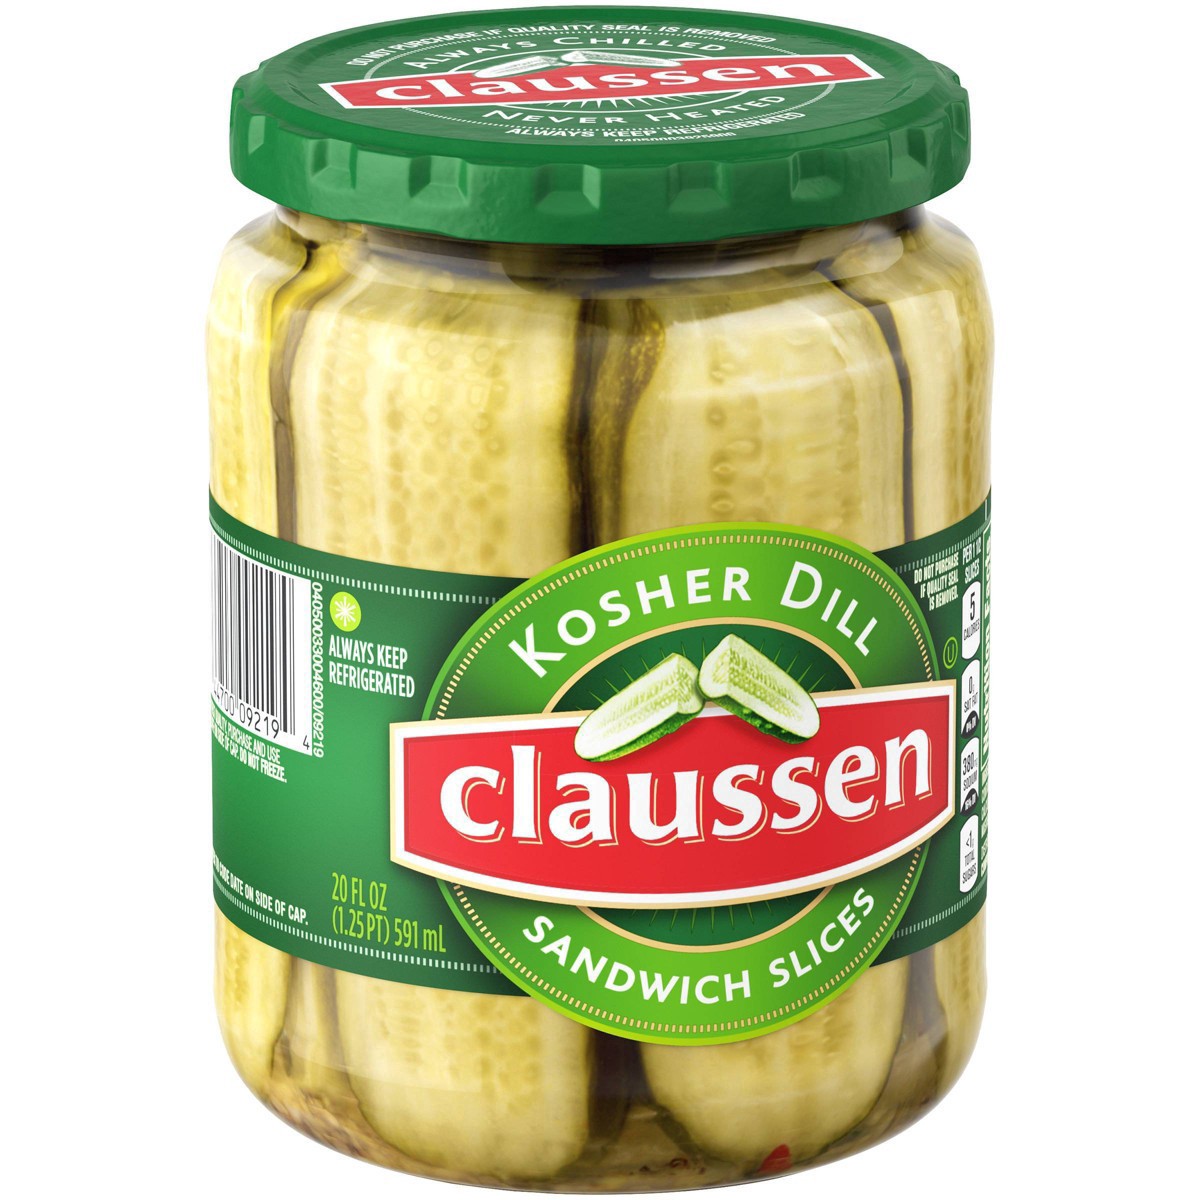 slide 131 of 144, Claussen Kosher Dill Pickle Sandwich Slices, 20 fl. oz. Jar, 20 fl oz